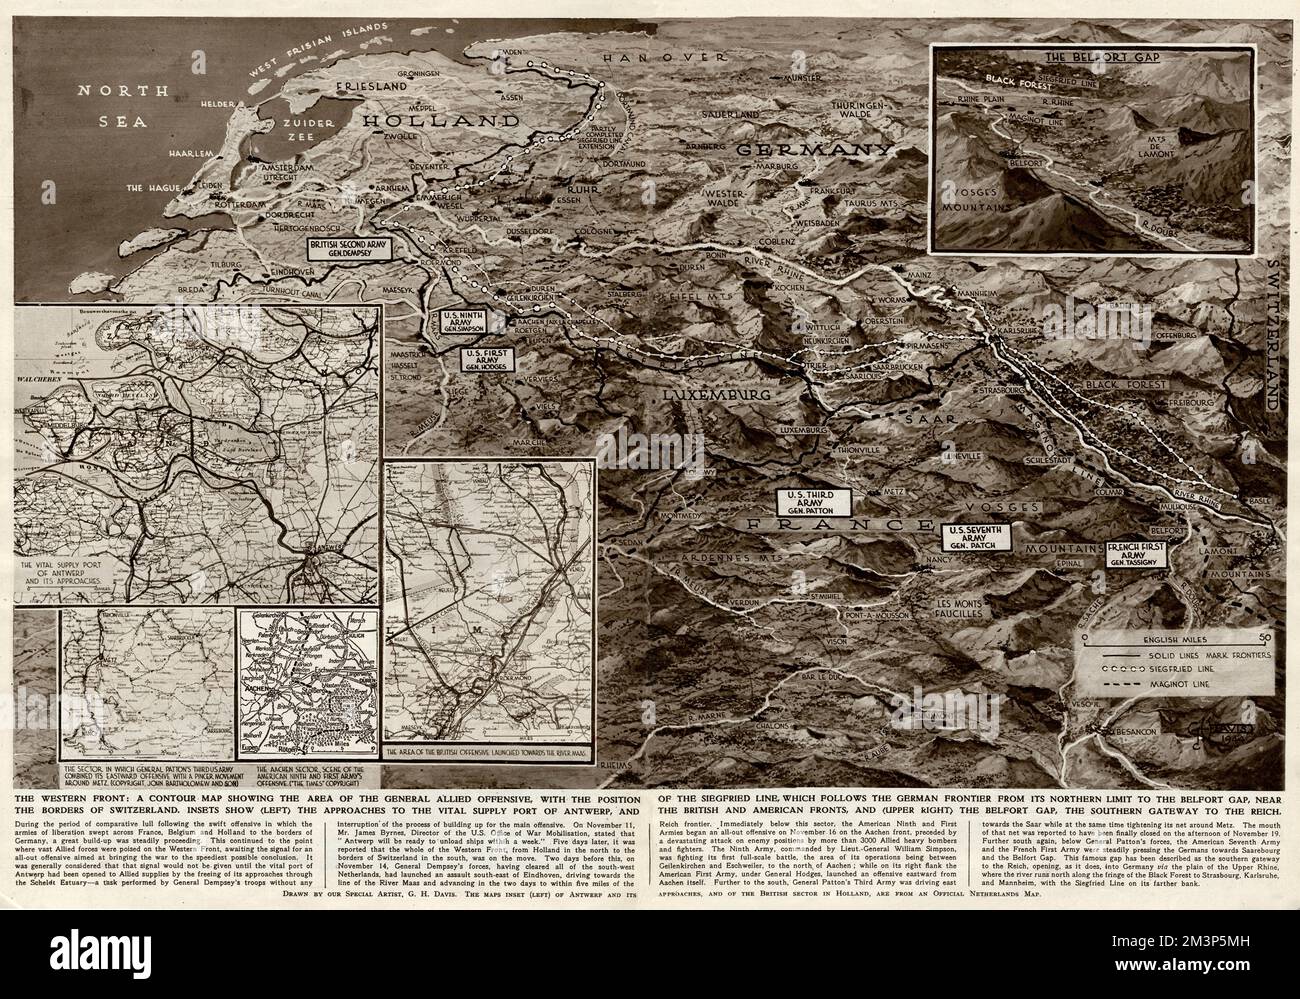 Le front occidental : une carte de contour montrant la zone de l'offensive générale des alliés à ce stade de la Seconde Guerre mondiale. Montrant la ligne Siegfried, le port d'approvisionnement d'Anvers, les fronts britannique et américain, et le fossé Belfort. Banque D'Images